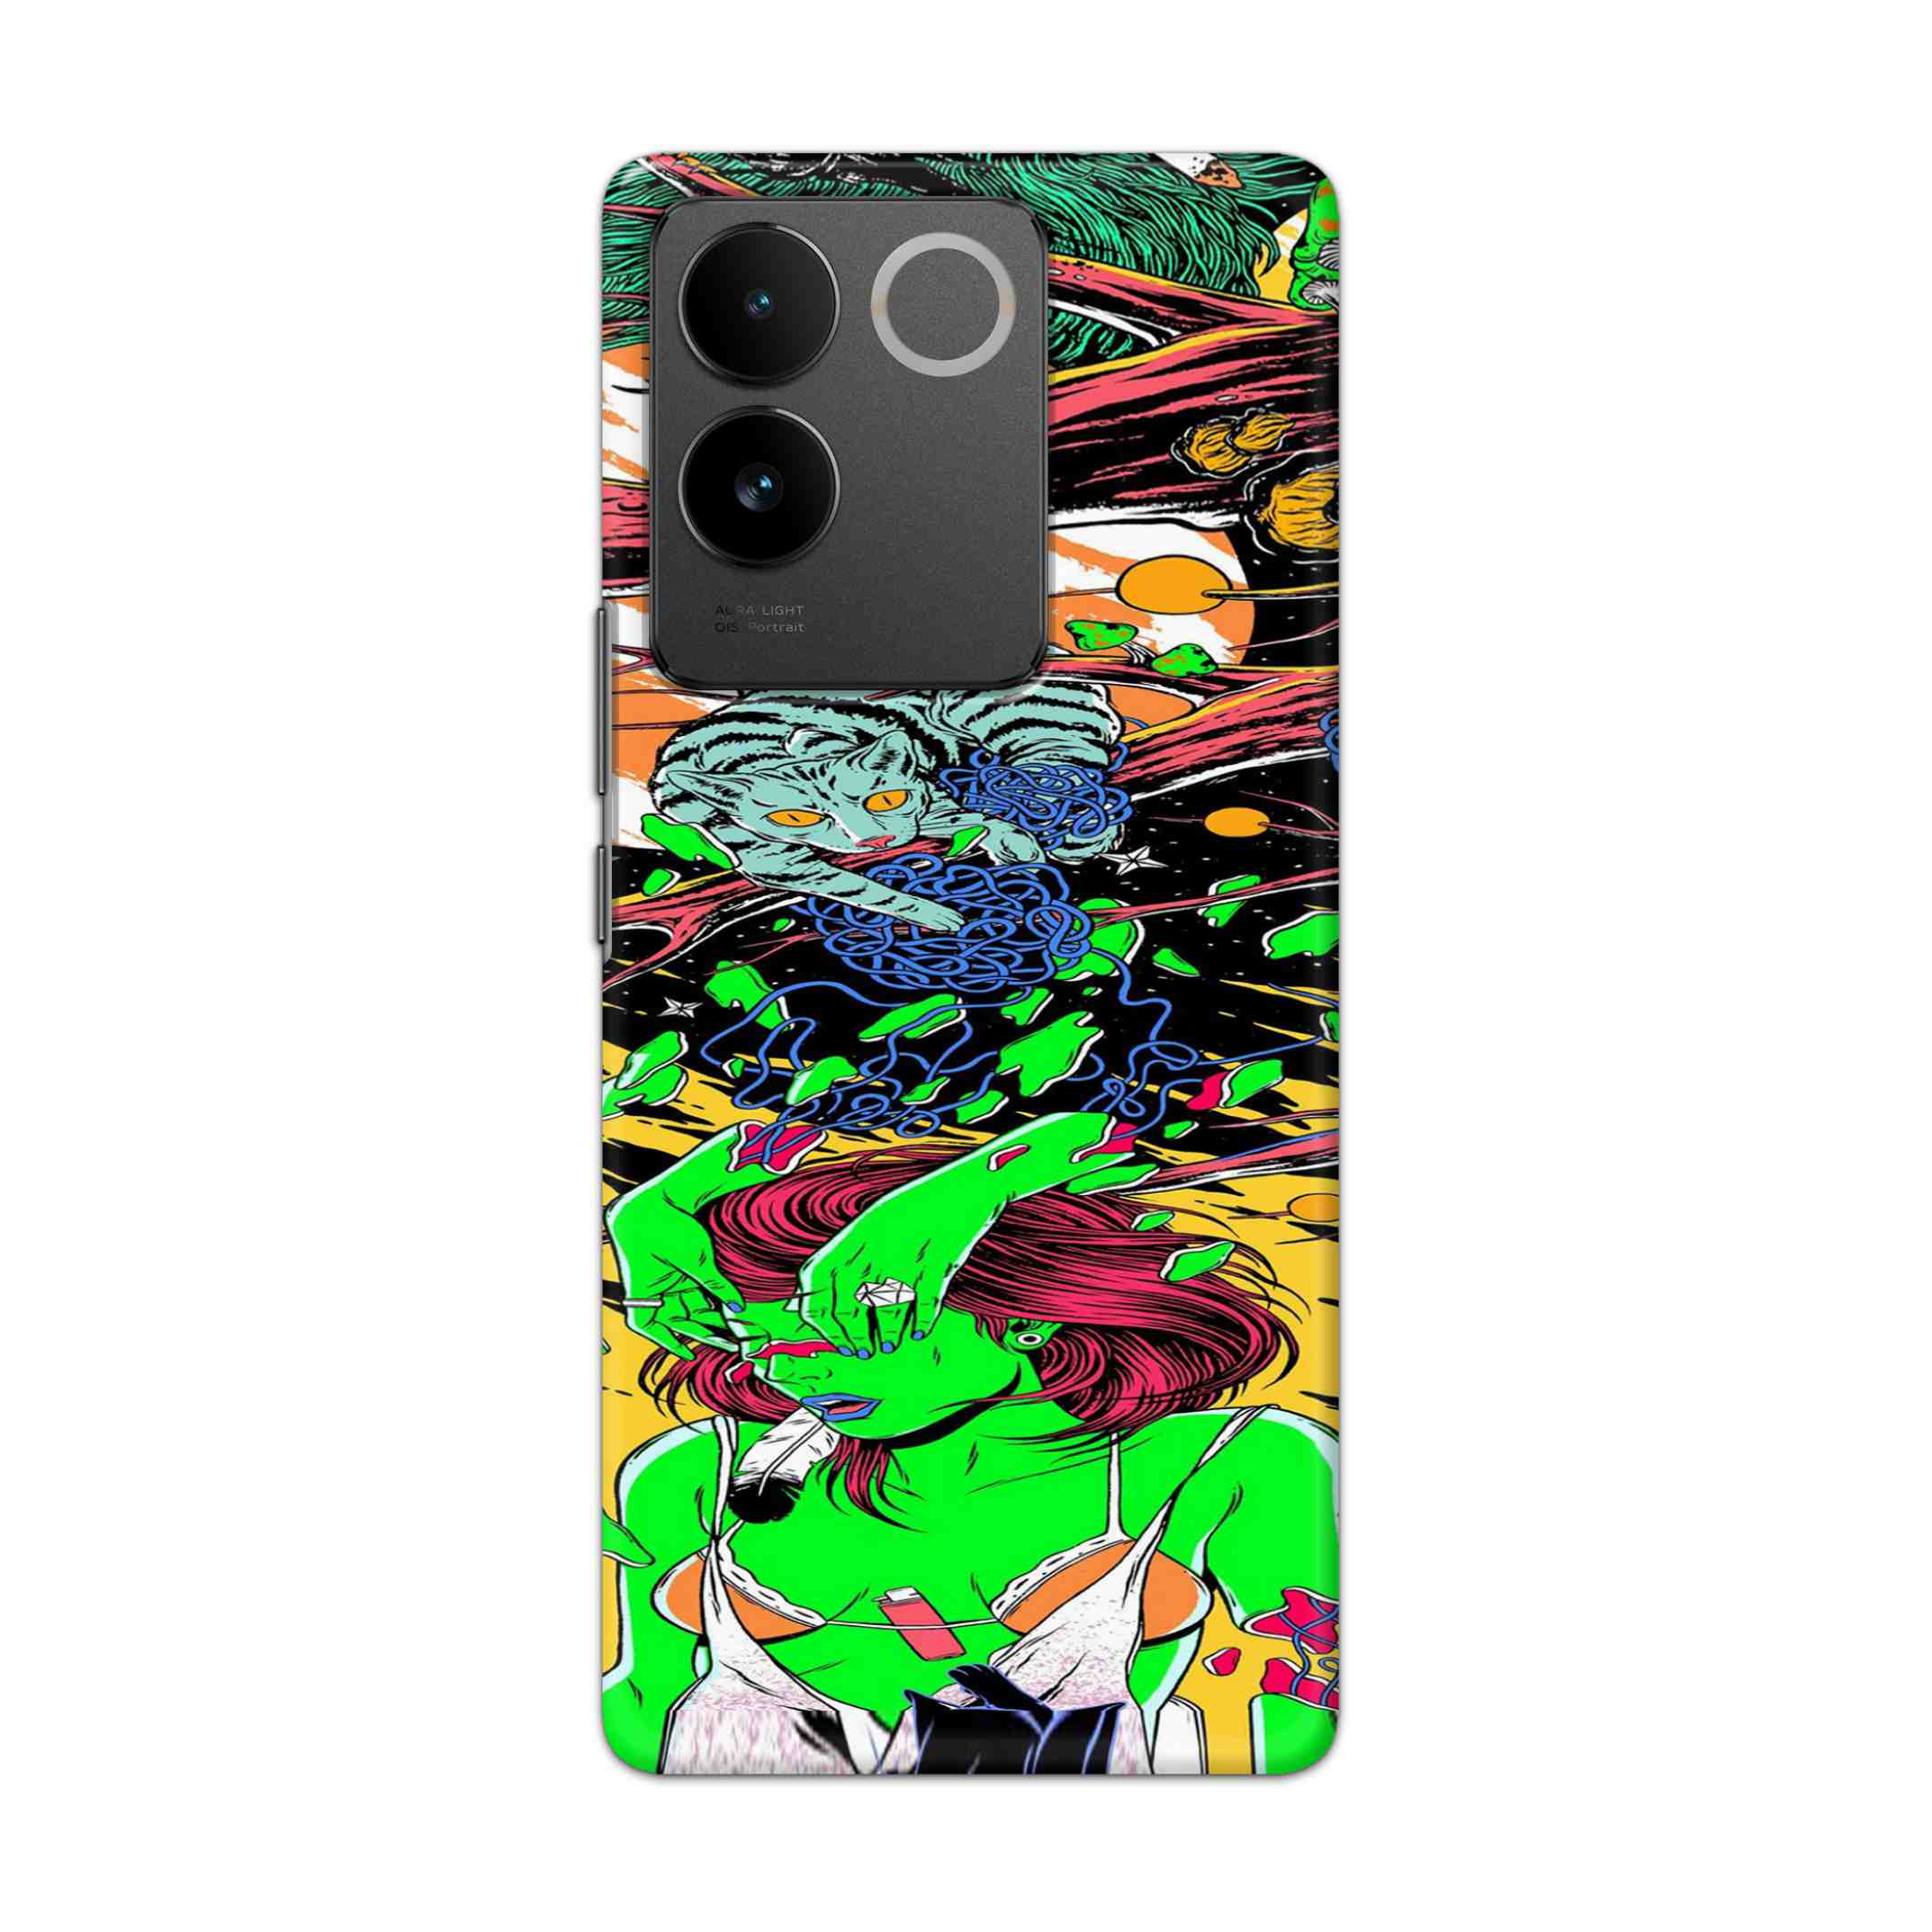 Buy Green Girl Art Hard Back Mobile Phone Case/Cover For vivo T2 Pro 5G Online